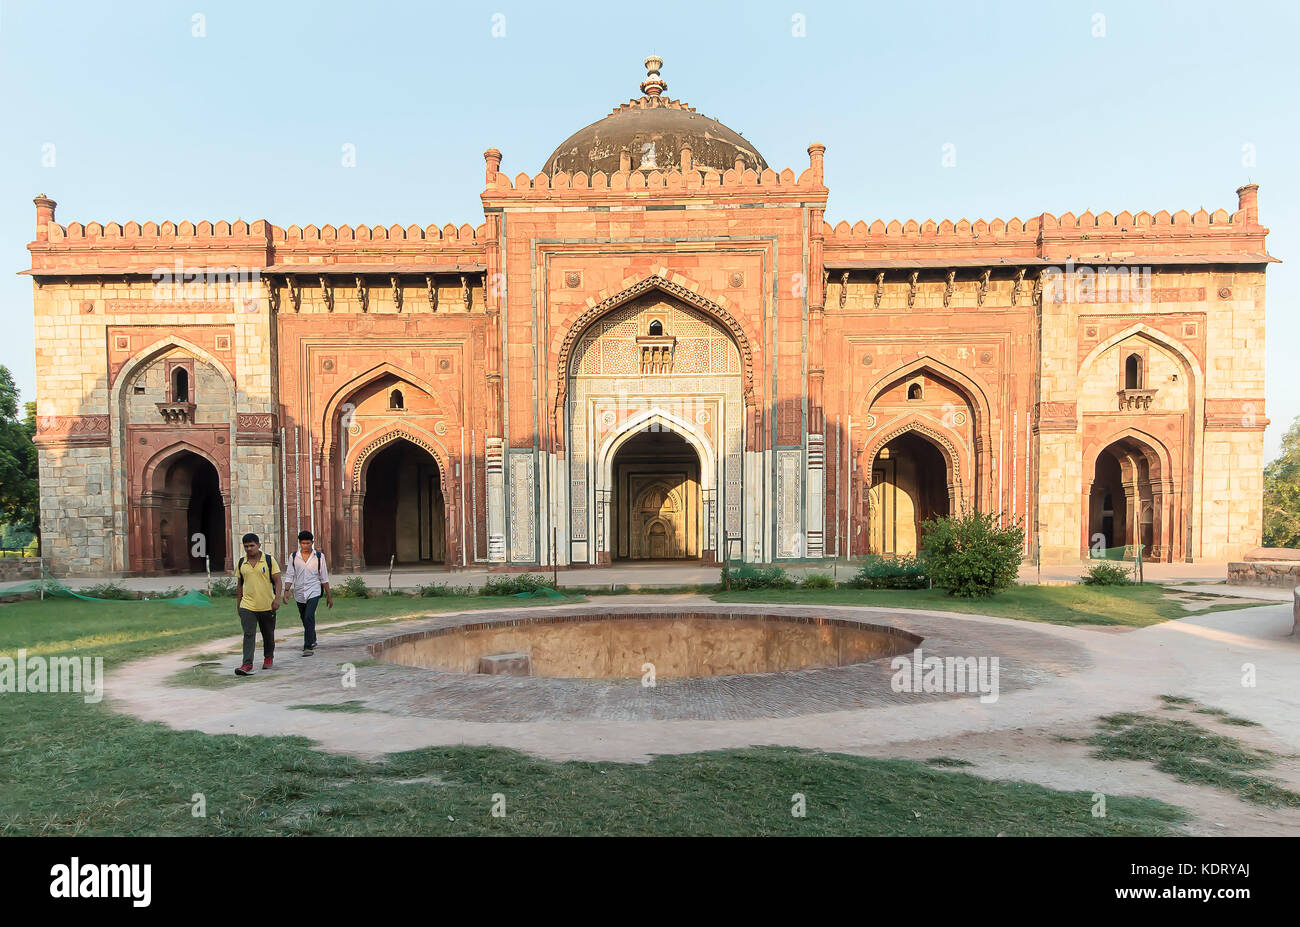 New Delhi, India, October 01.2015: Students going to school near Qila-i-kuhna Mosque At Purana Quila, New Delhi Stock Photo